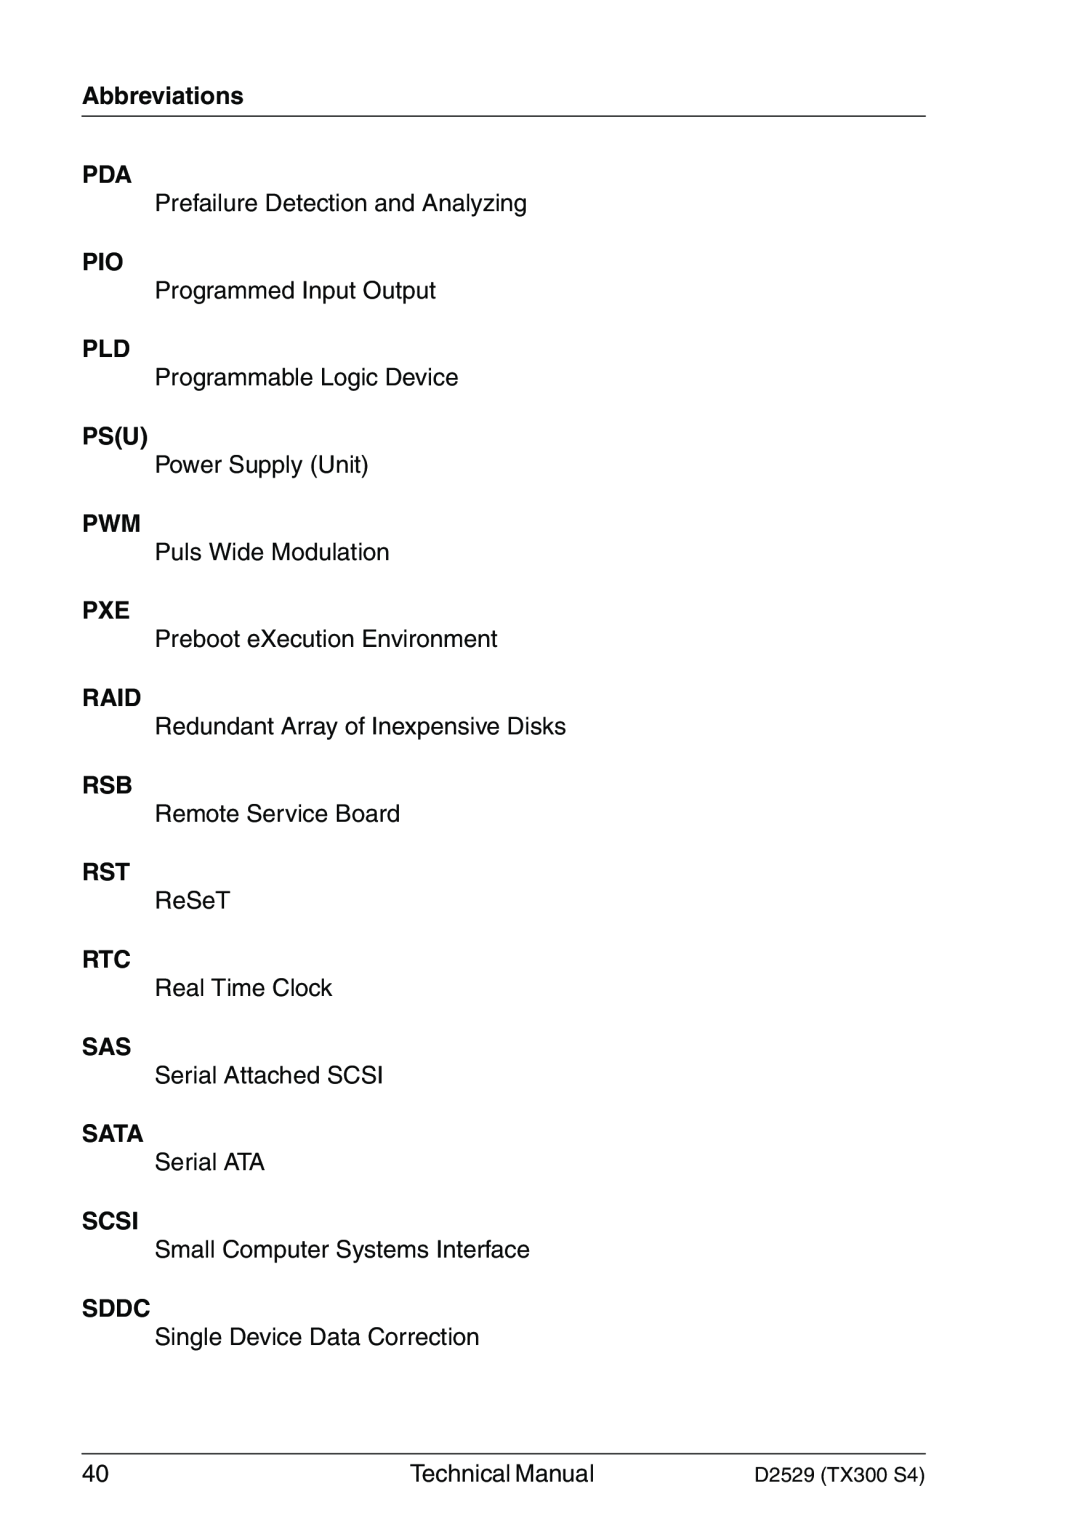 Fujitsu D2529 technical manual Abbreviations PDA, Raid, Sata, Scsi, Sddc 